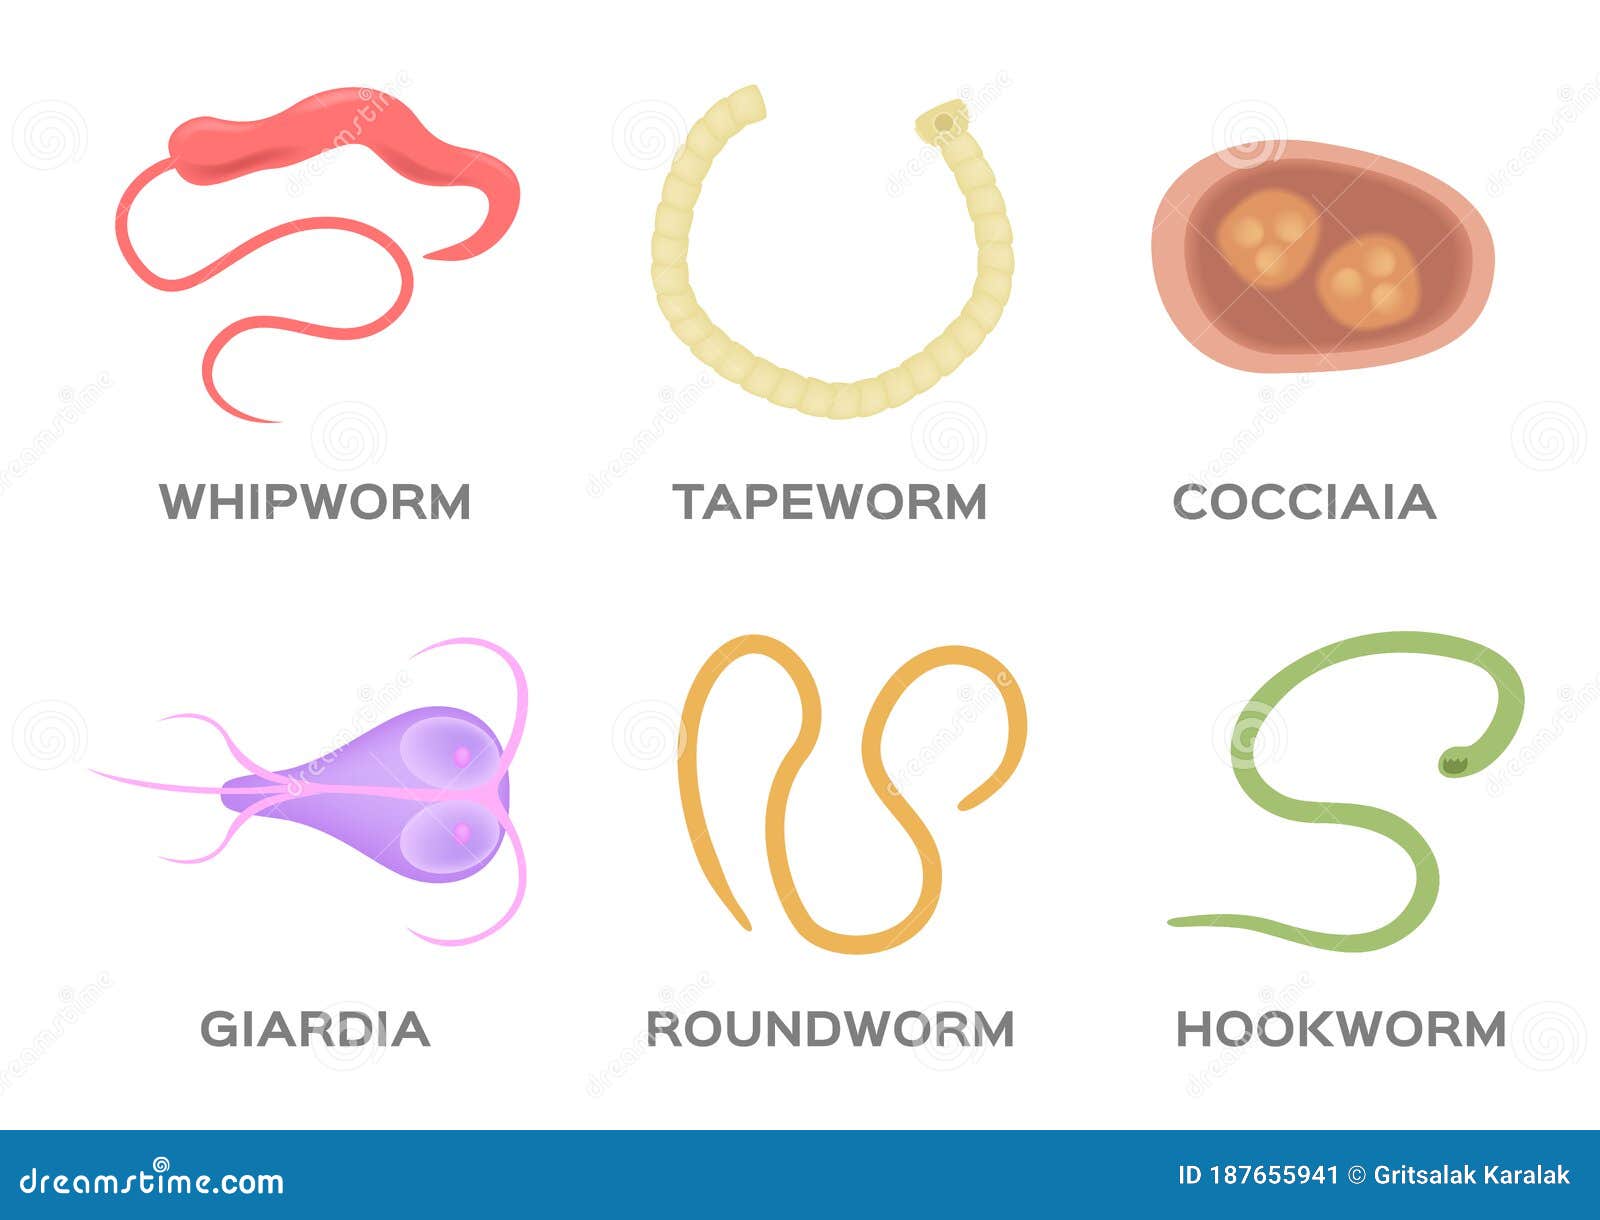 Giardia worms in humans, Férgek gyógyszere gyermekek számára 6 hónapos kortól